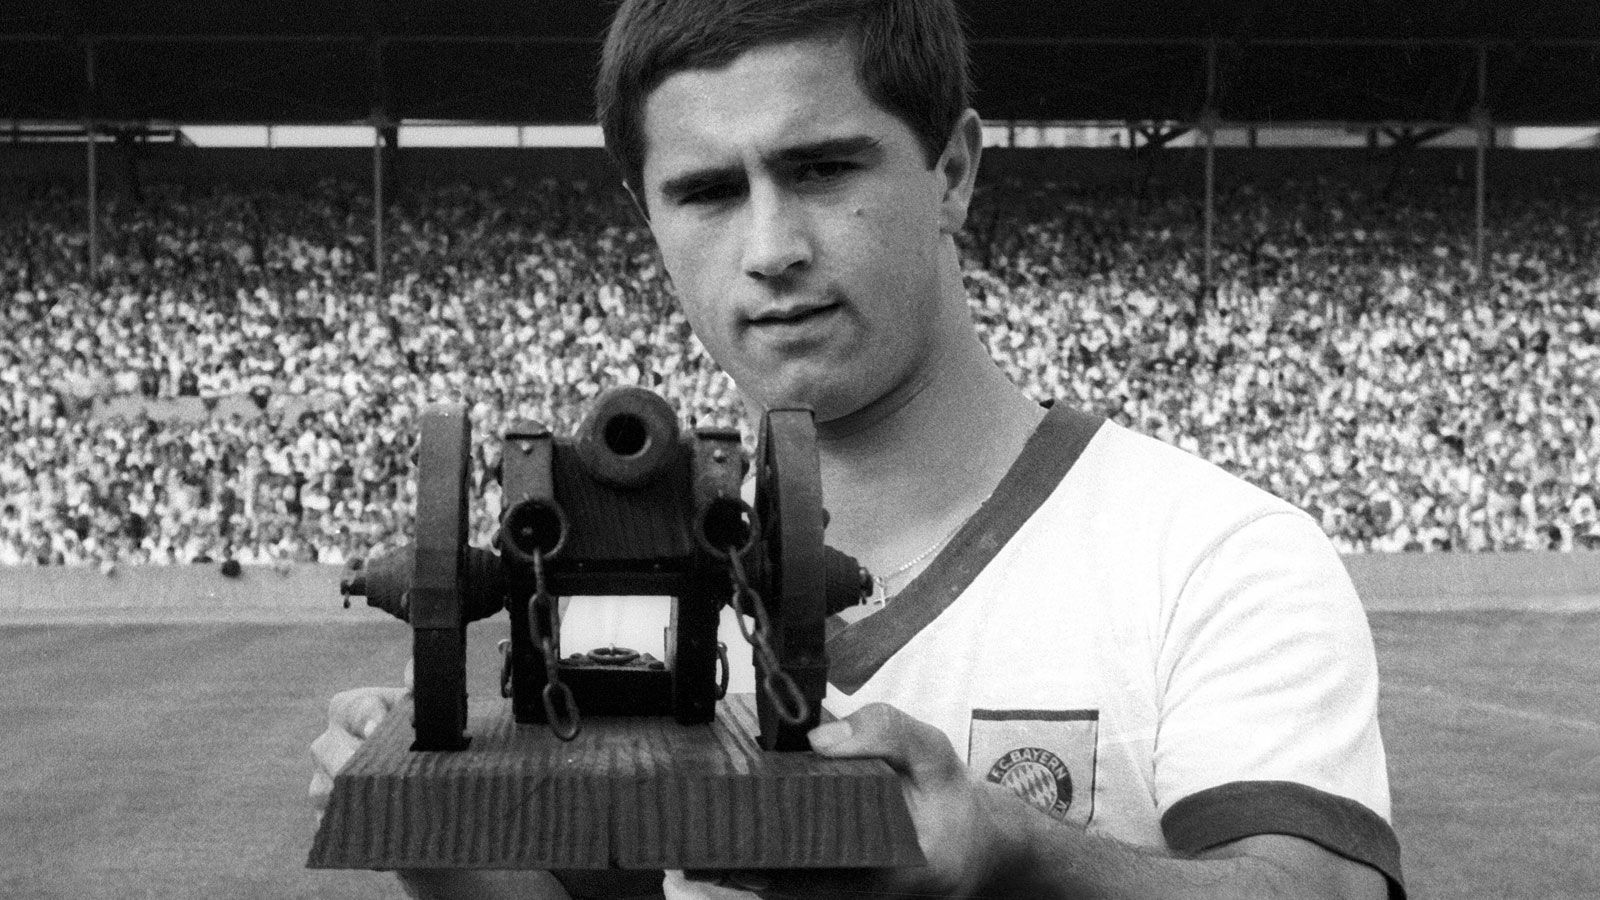 
                <strong>Jüngster Bundesliga-Torschützenkönig: Gerd Müller (Bayern München)</strong><br>
                Man hätte es erahnen können, Gerd Müller war der jüngste Bundesliga-Profi, der je mit der Torjägerkanone auf einen Fotografen zielen durfte. In der Saison 1966/1967 erzielte der Bayern-Profi 28 Treffer und teilte sich den Titel mit Lothar Emmerich von Borussia Dortmund. Die Spielzeit endete am 3. Juni 1967 - damals war der "Bomber der Nation" 21 Jahre und 212 Tage jung.Dieses Alter erreicht Moukoko am 20. Juni 2026 - damit bleiben ihm nach der aktuellen noch fünf weitere Spielzeiten, um hier die Nummer eins zu werden.
              